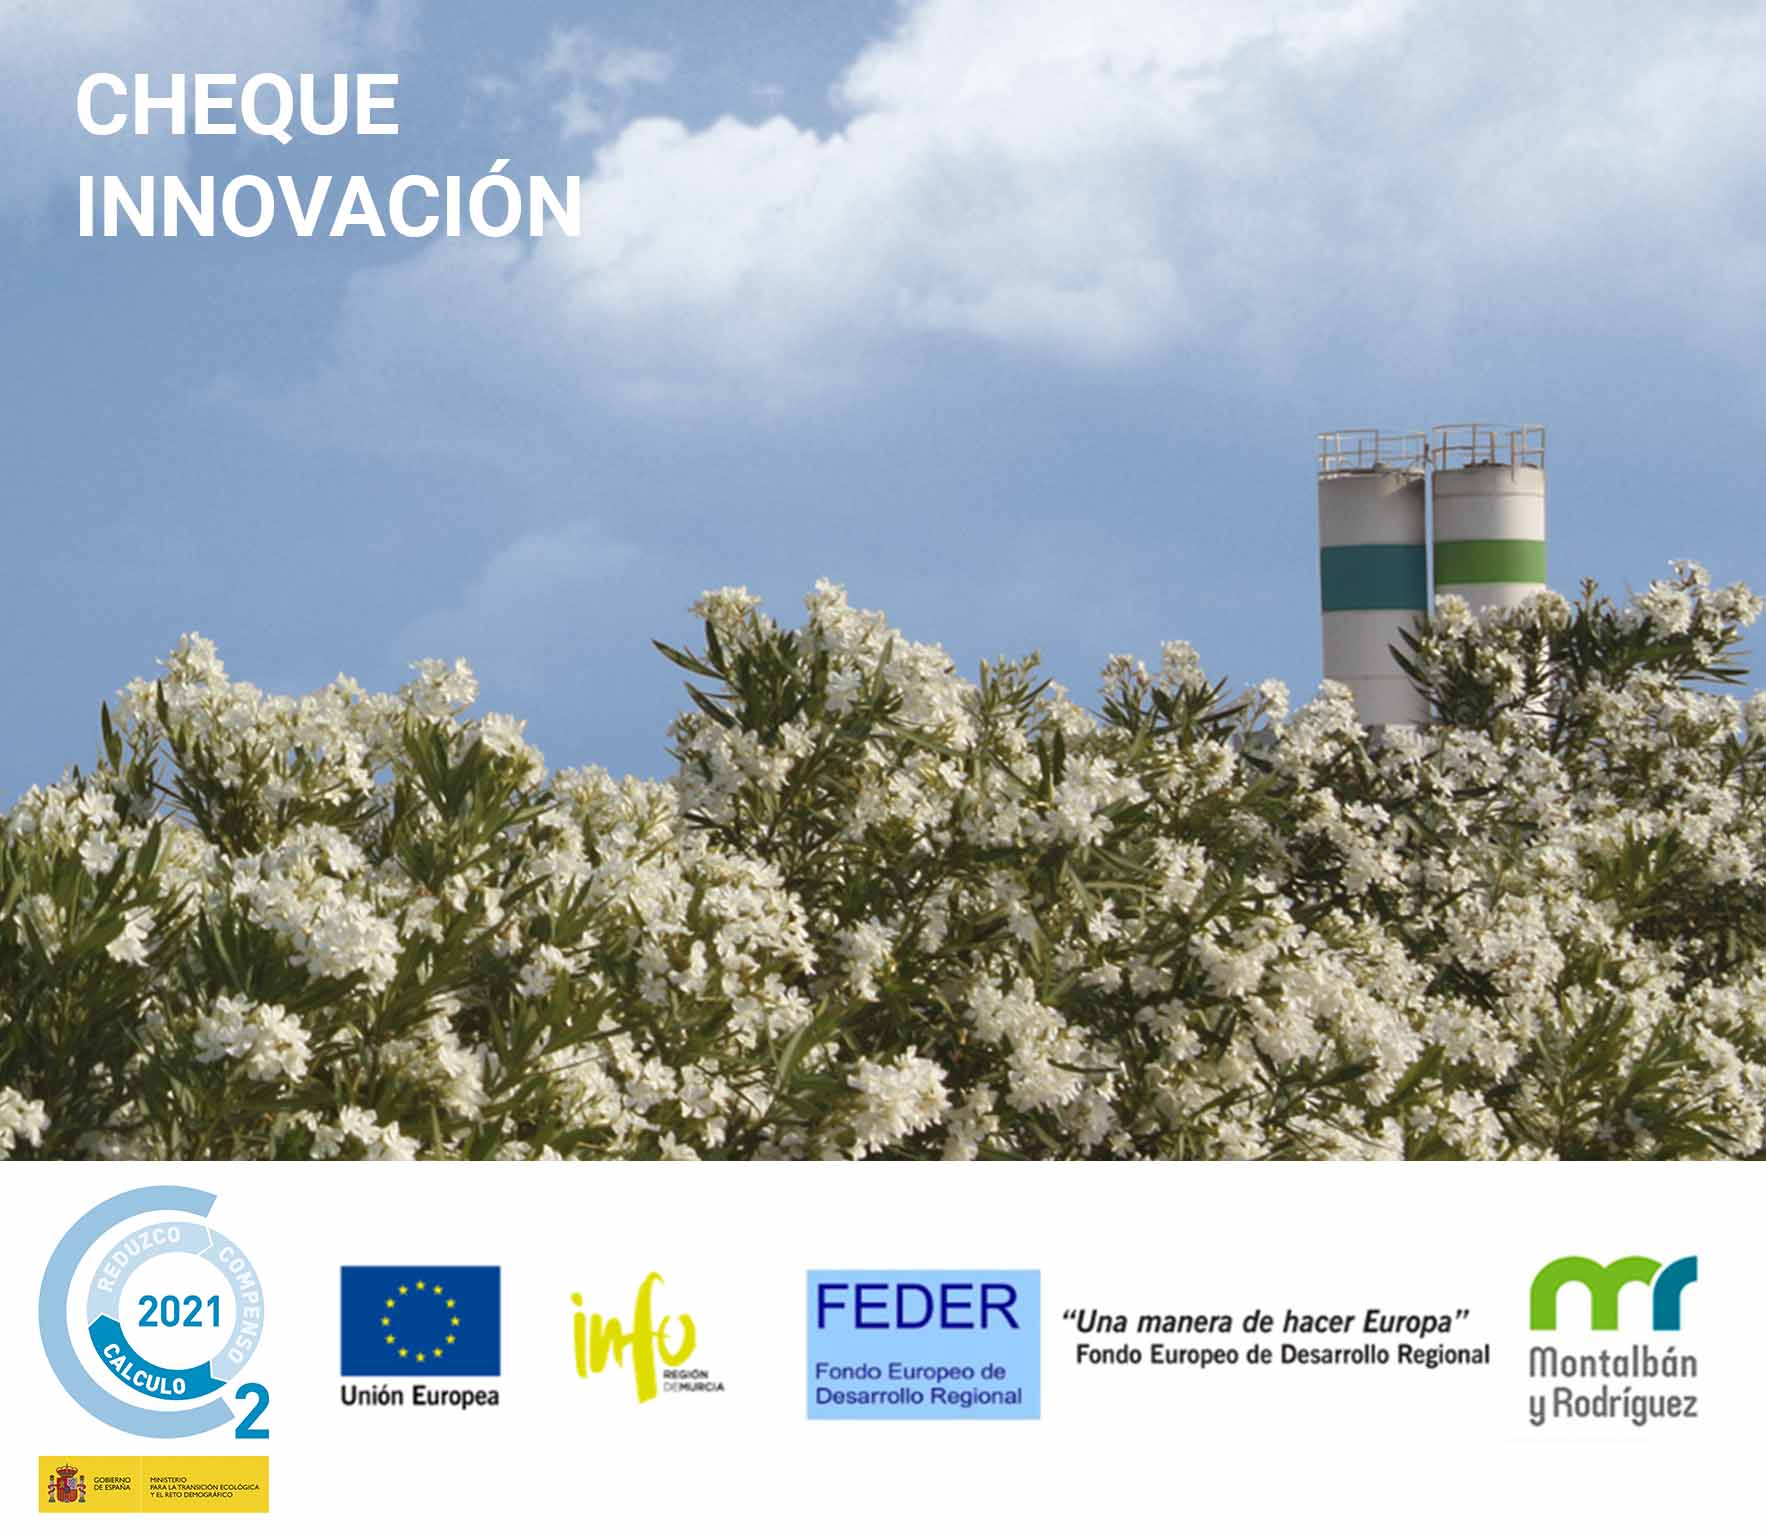 Montalbán y Rodríguez vuelve a recibir un Cheque de Innovación para avanzar en materia de sostenibilidad